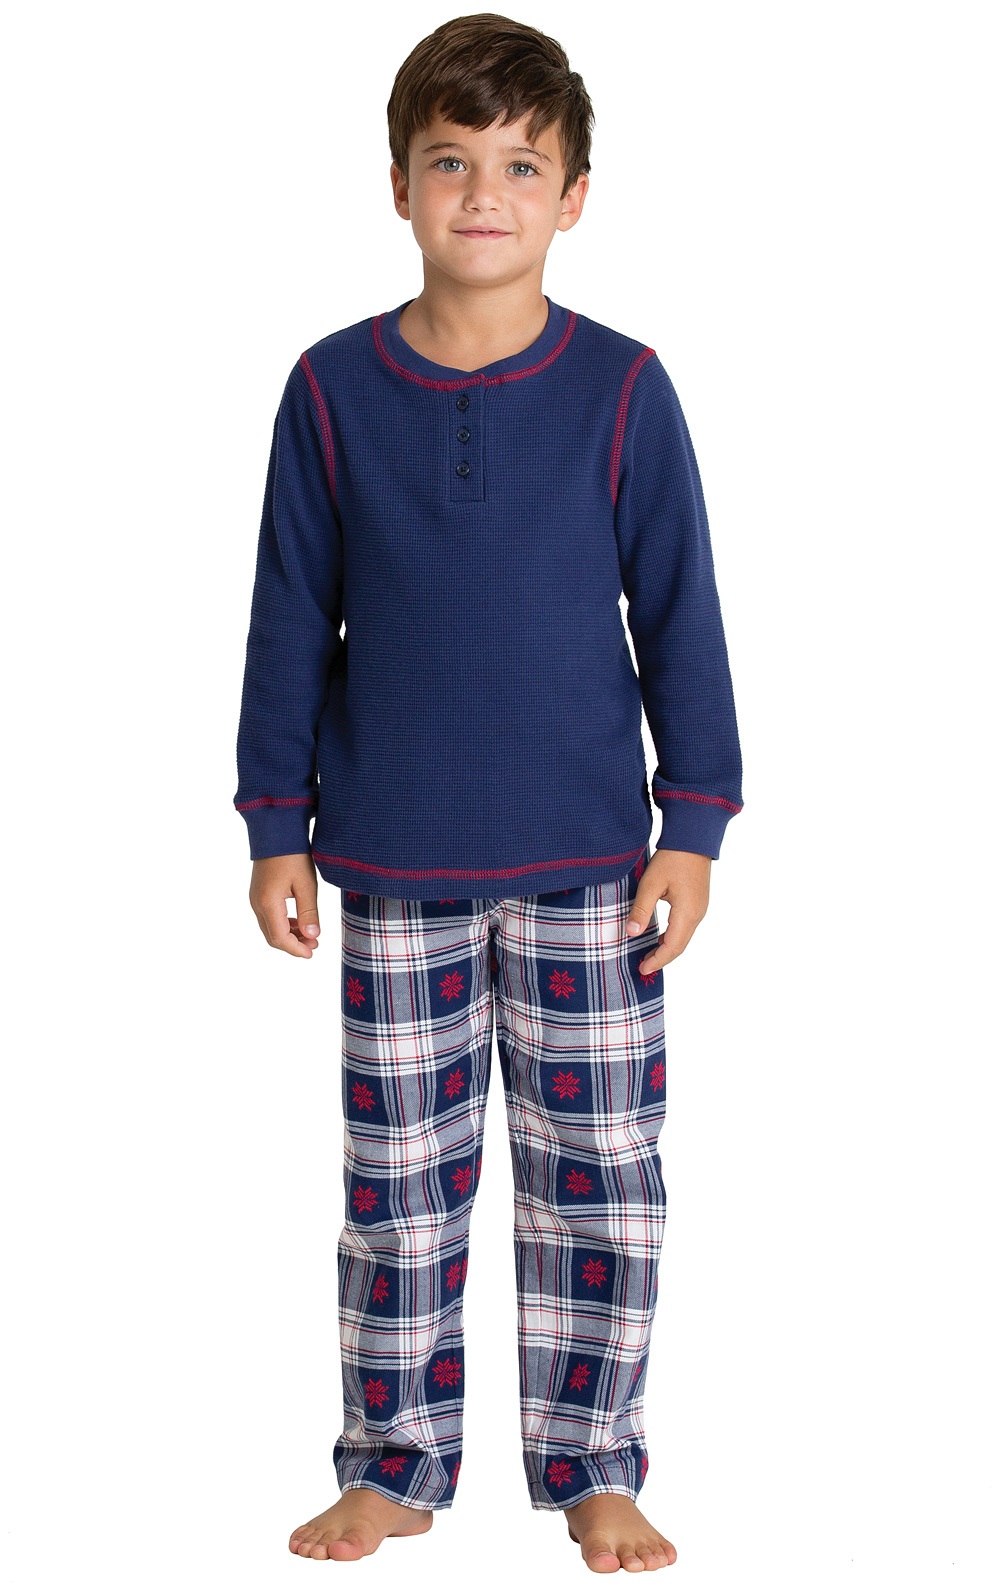 Snowfall Plaid Boys Pajamas in Boys Pajamas & Onesies (Size 6 - 14